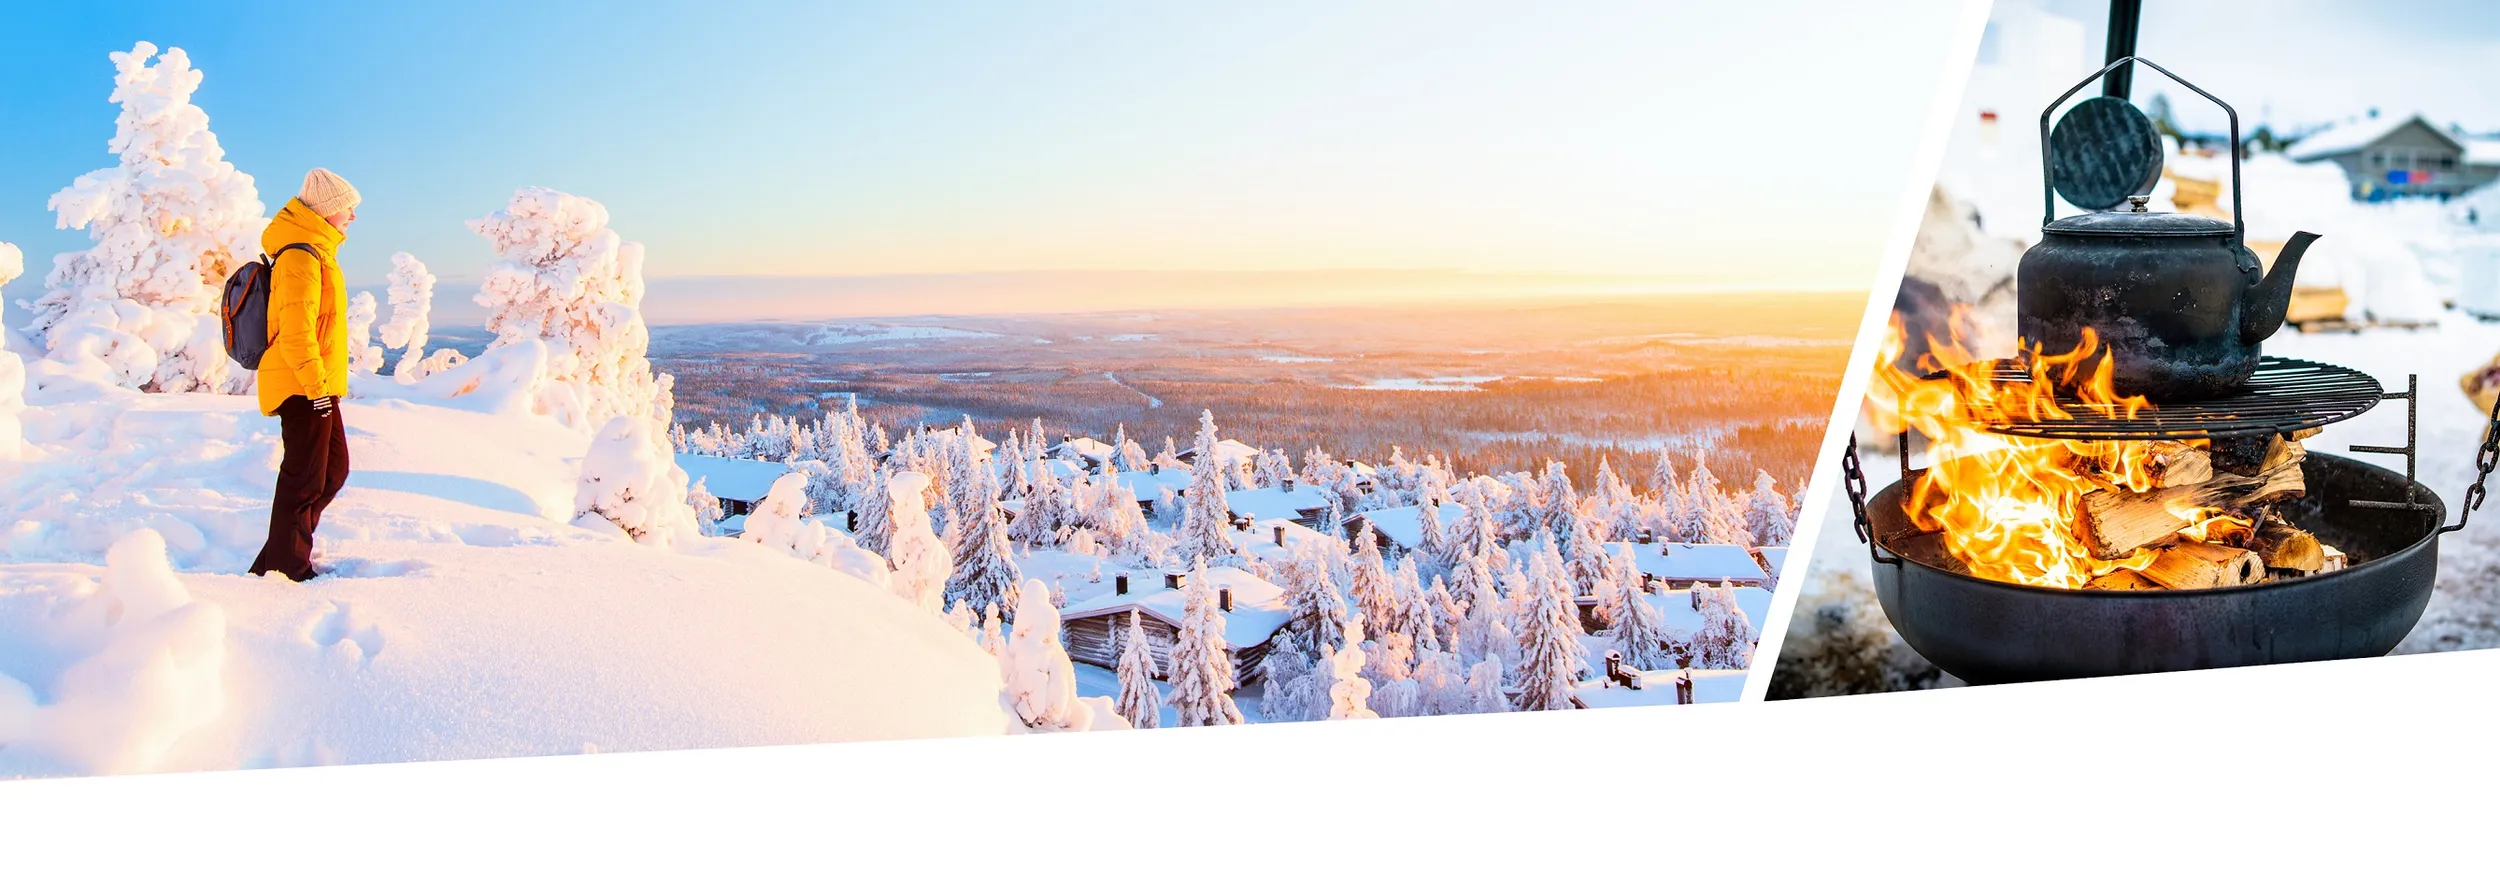 Ein Wanderer in der finnischen Schneelandschaft